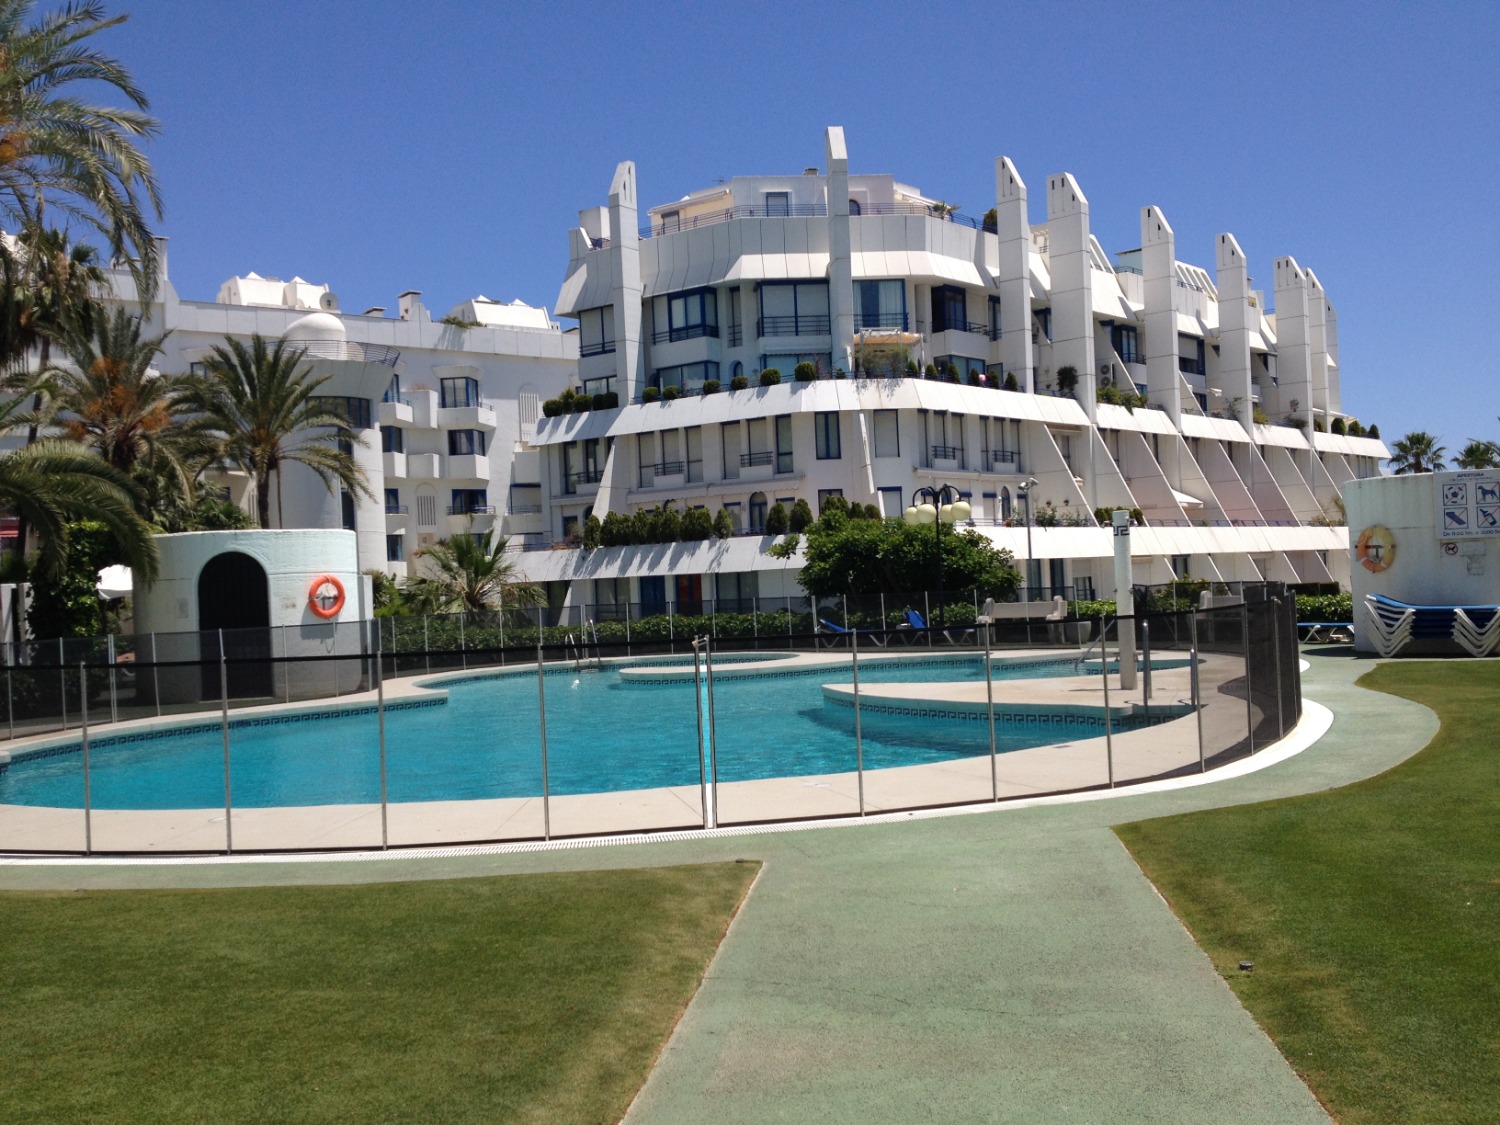 Nájemné. Dvoupodlažní dům se 2 ložnicemi. 1 minutu chůze od pláže. Marbella.